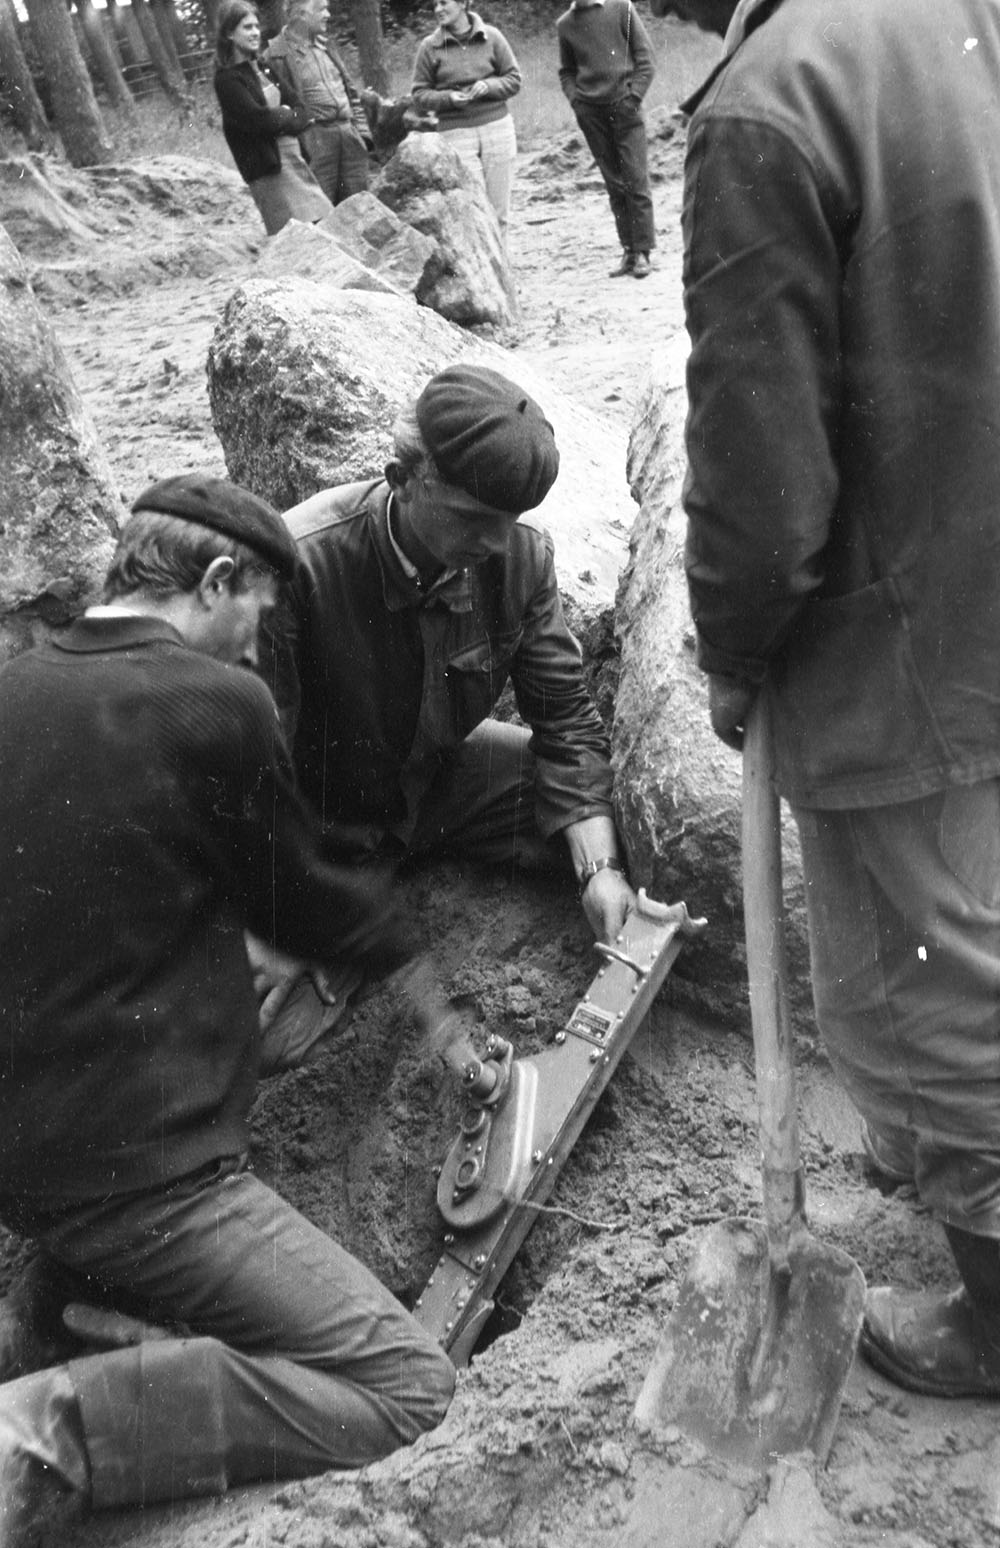 Prace wykonywane podczas rekonstrukcji grobowców w Wietrzychowicach